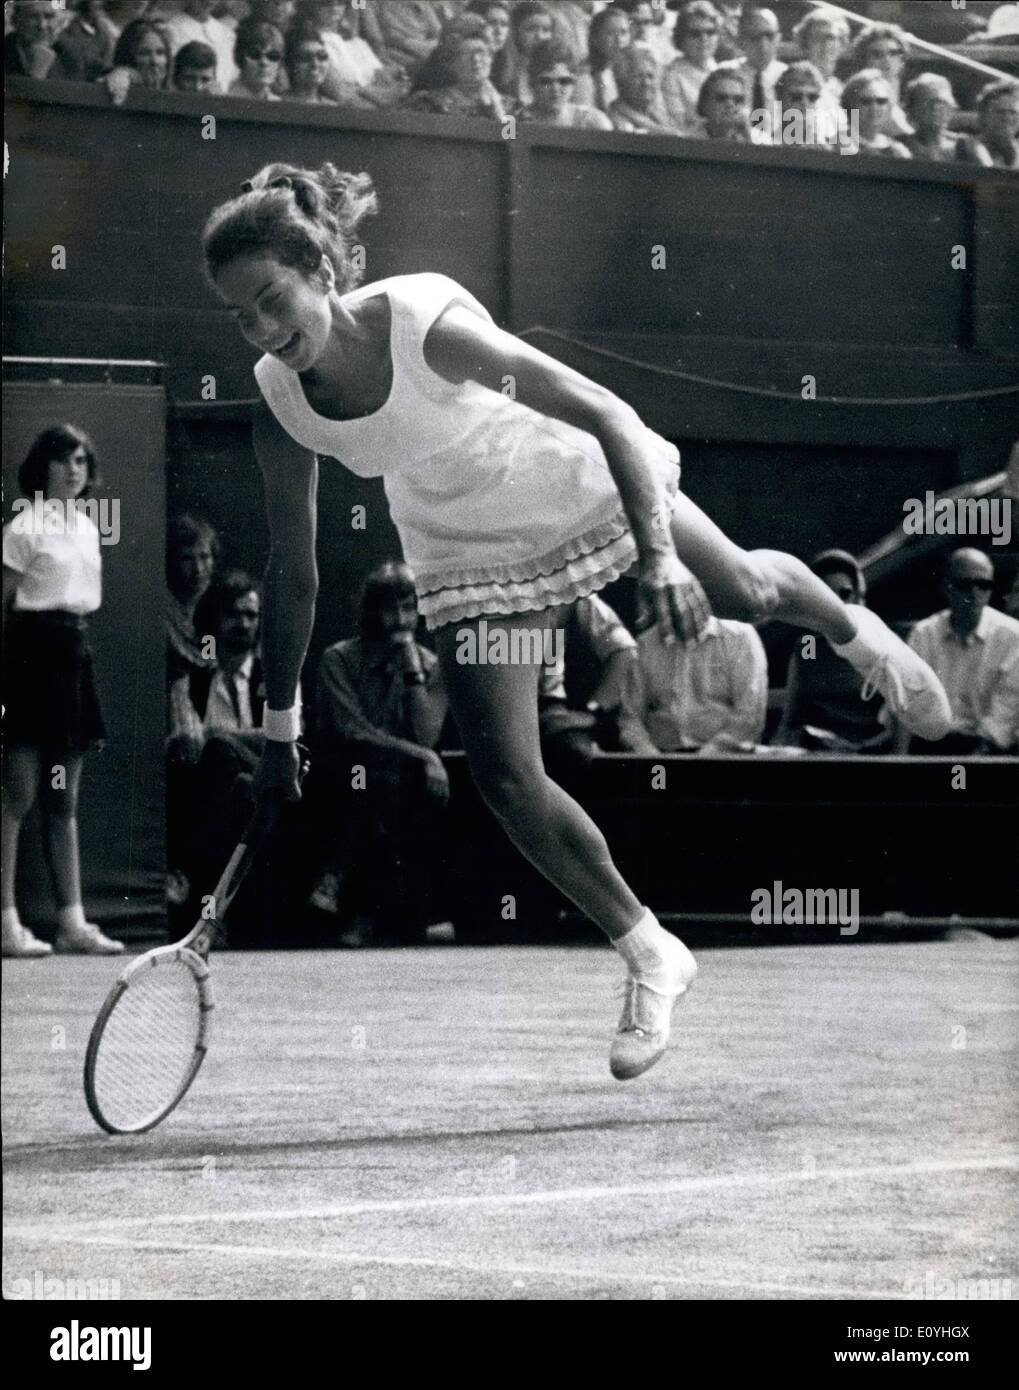 Giugno 06, 1970 - Wightman Cup a Wimbledon USA battere la Gran Bretagna 4-3 V. Wade V.N. Richey. La foto mostra V Wade G.B. visto nel giocare contro N. Richey USA. Durante la Wightman Cup a Wimbledon oggi. America ha vinto 4-3. Foto Stock